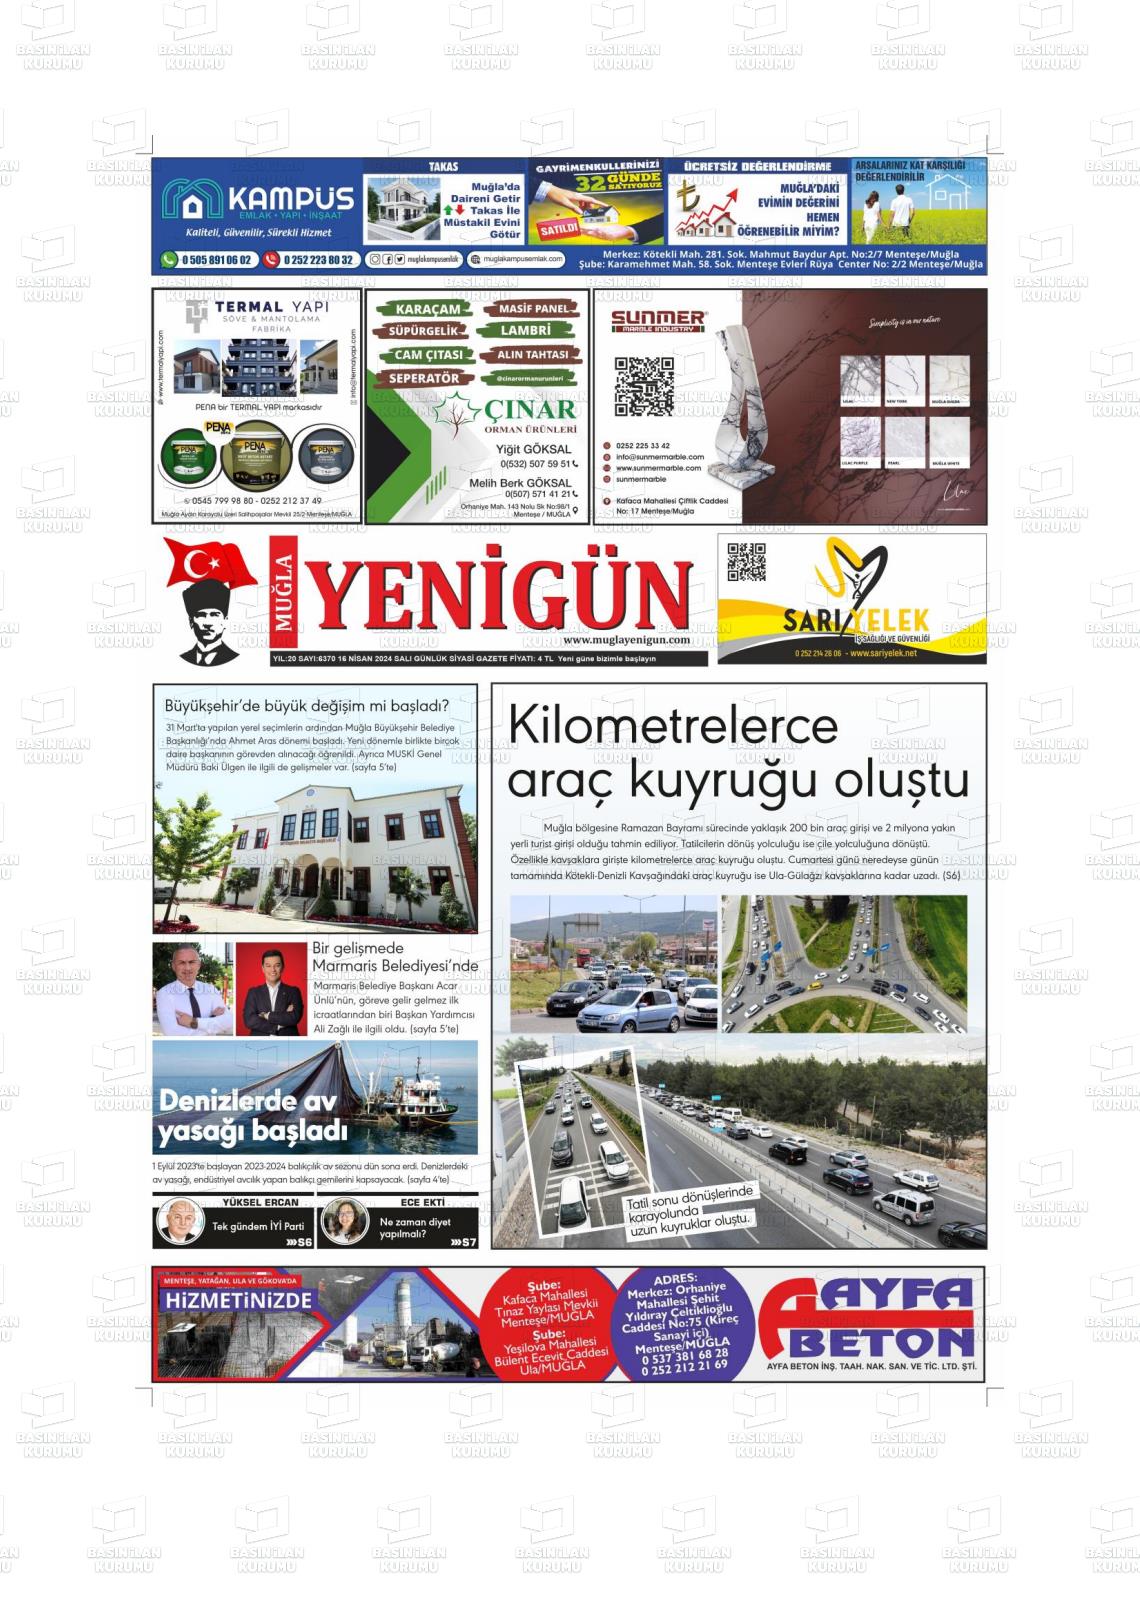 17 Nisan 2024 Muğla Yenigün Gazete Manşeti